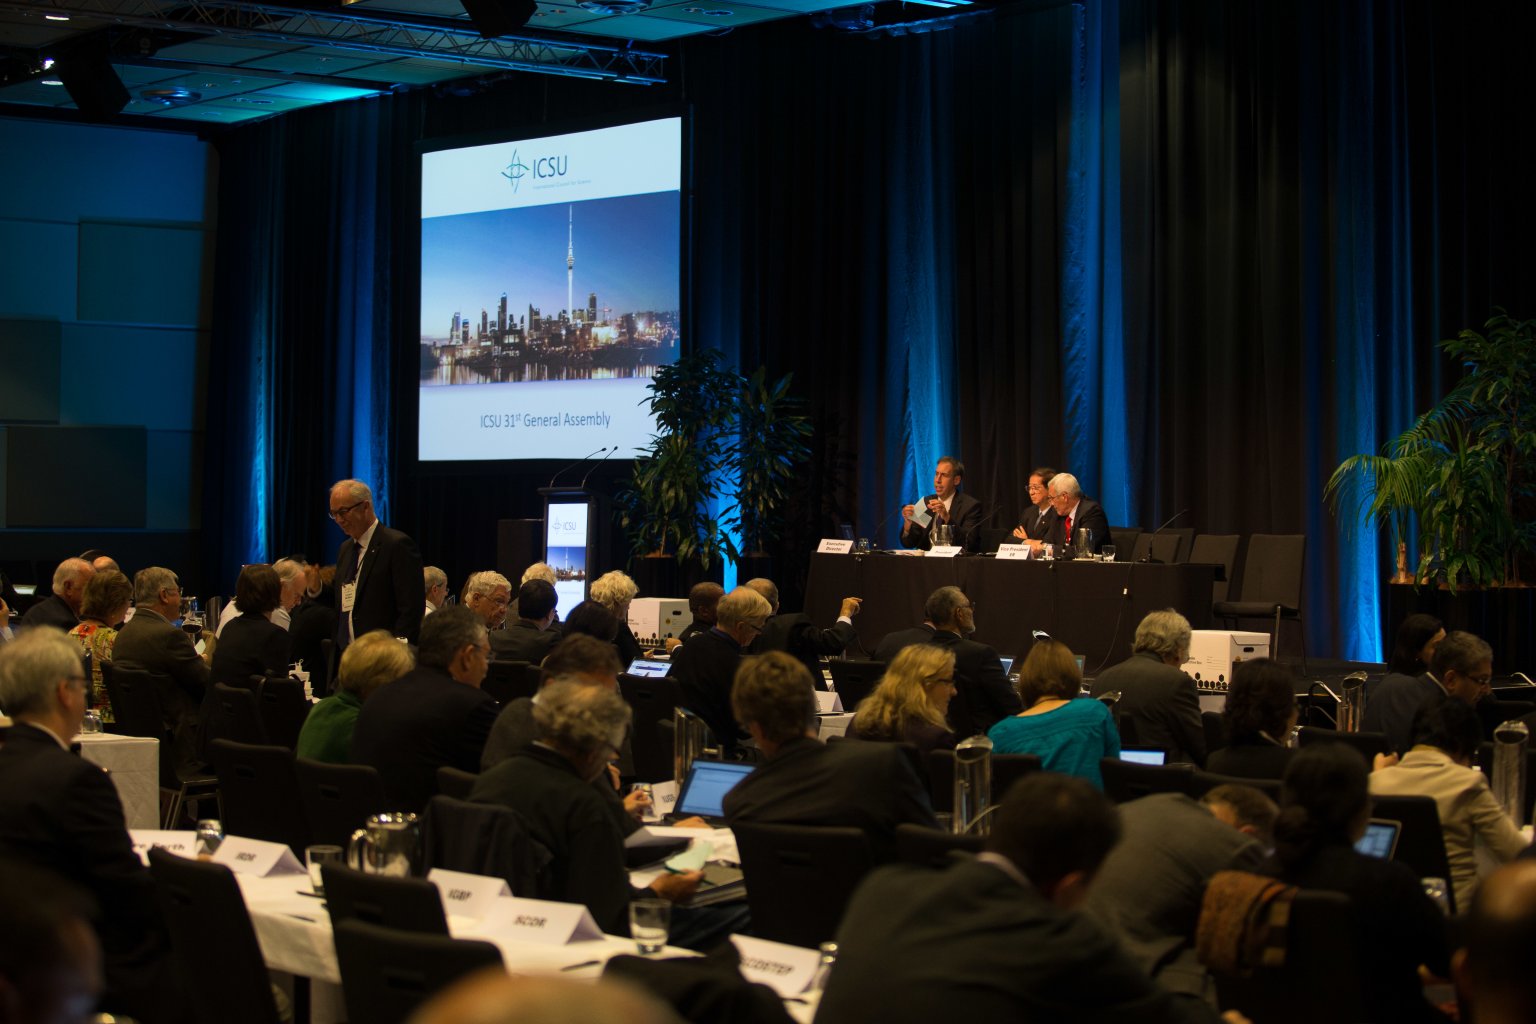 Assembleia geral do ICSU é inaugurada em Auckland